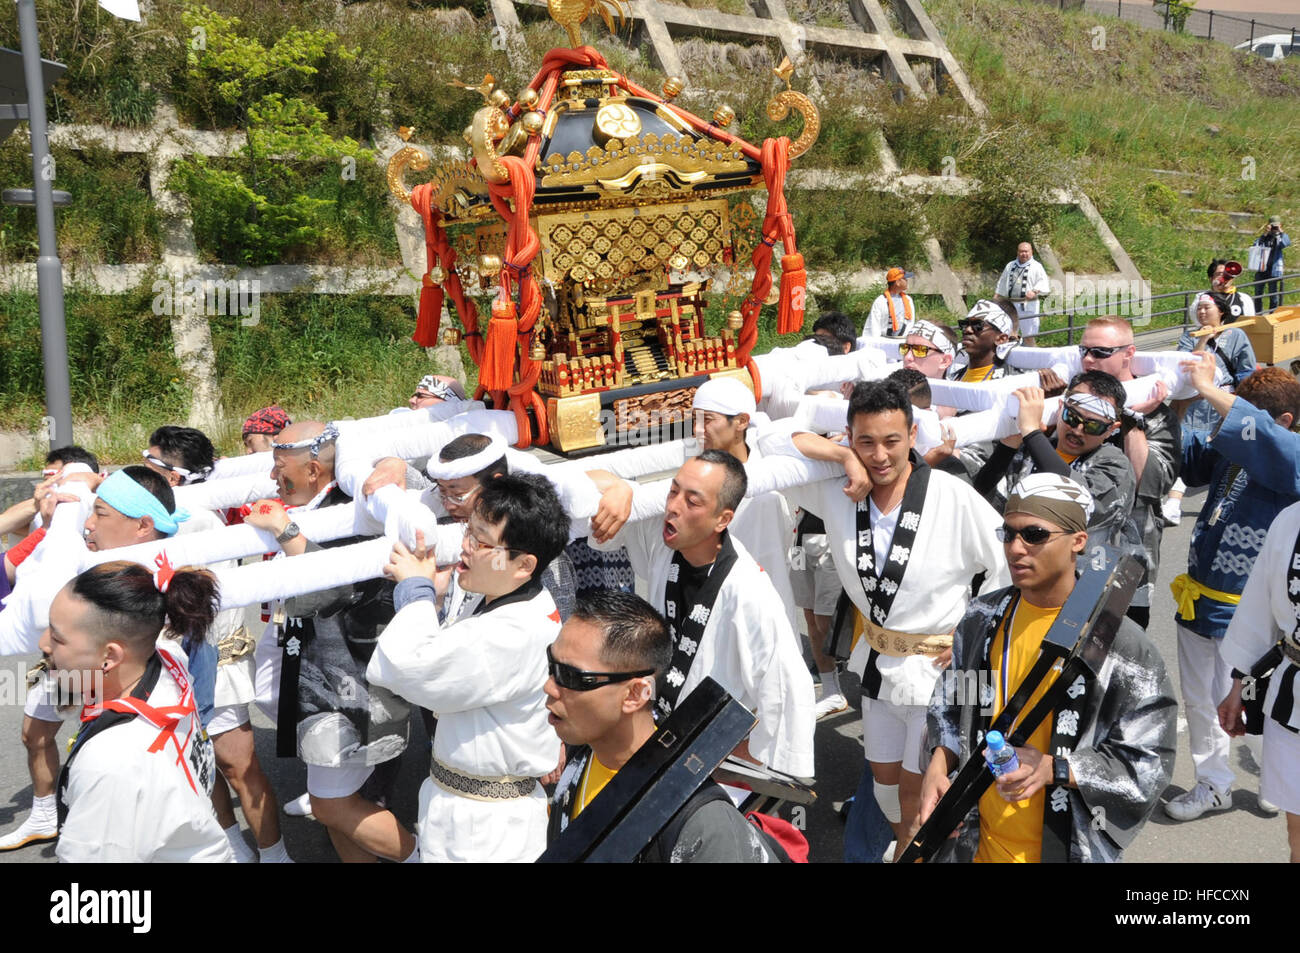 150503-N-EC644-103 ONAGAWA, Japon (3 mai 2015) Marins de Misawa Air Base, Japon, aider les citoyens d'Onagawa, Japon, faire un sanctuaire Shinto portable, appelé un mikoshi, au cours de la ville en mikoshi festival. Les prêtres Shinto local de prier pour la sécurité de la ville comme le mikoshi est effectué pour les quartiers environnants. La ville d'Onagawa est situé dans la préfecture de Miyagi et du Japon a été dévasté par le séisme et le tsunami qui a suivi qui a frappé la région le 11 mars 2011. Les citoyens d'Onagawa a commencé à inviter la Marine américaine pour leur festival annuel comme un signe de l'amitié après l'imp Banque D'Images